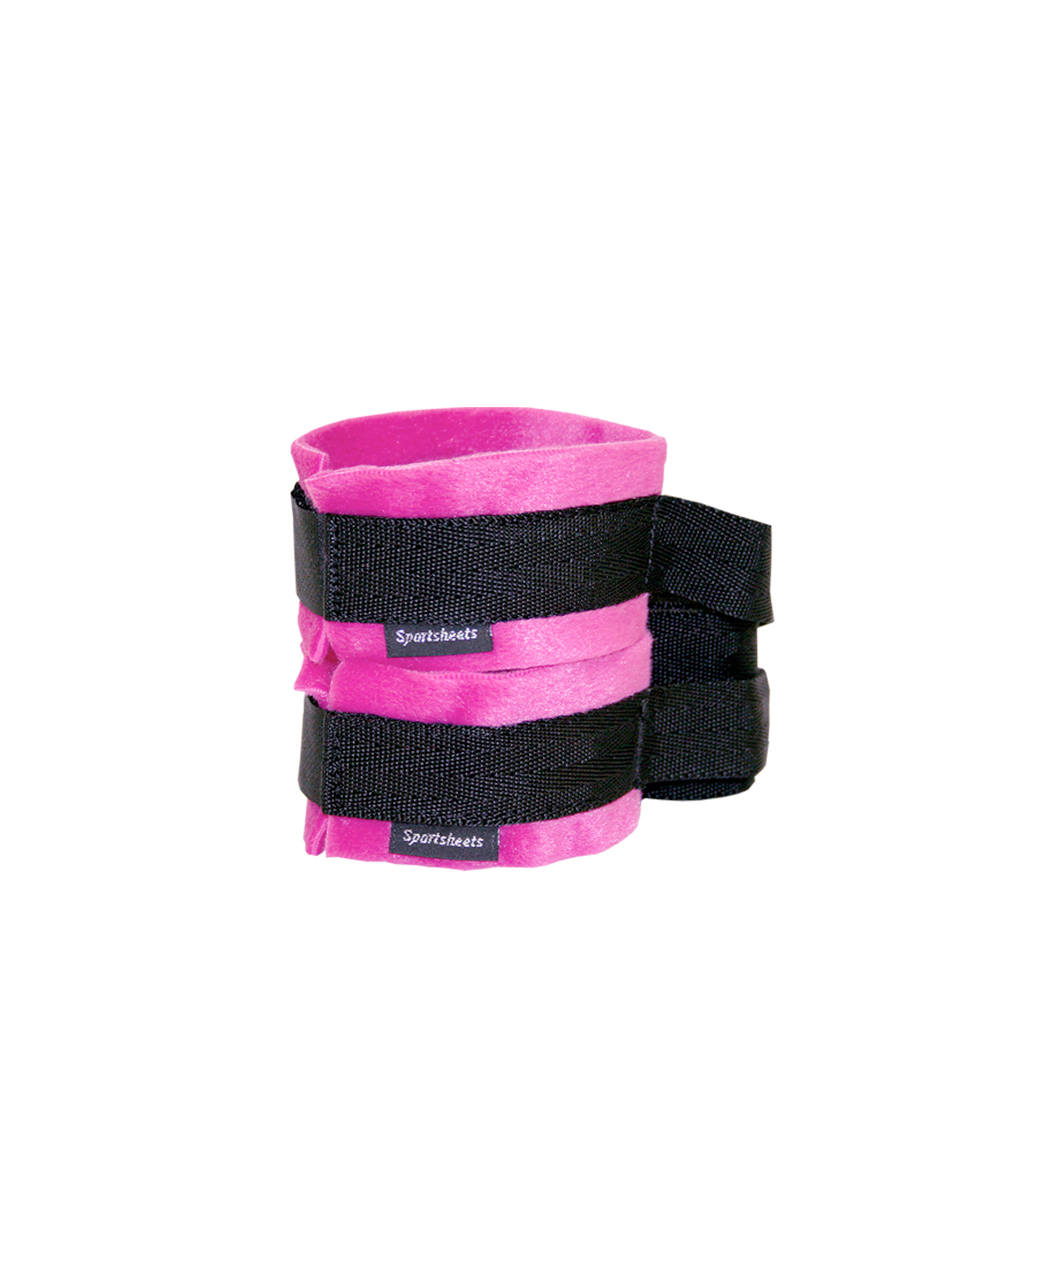 Sportsheets Kinky Pinky Cuffs